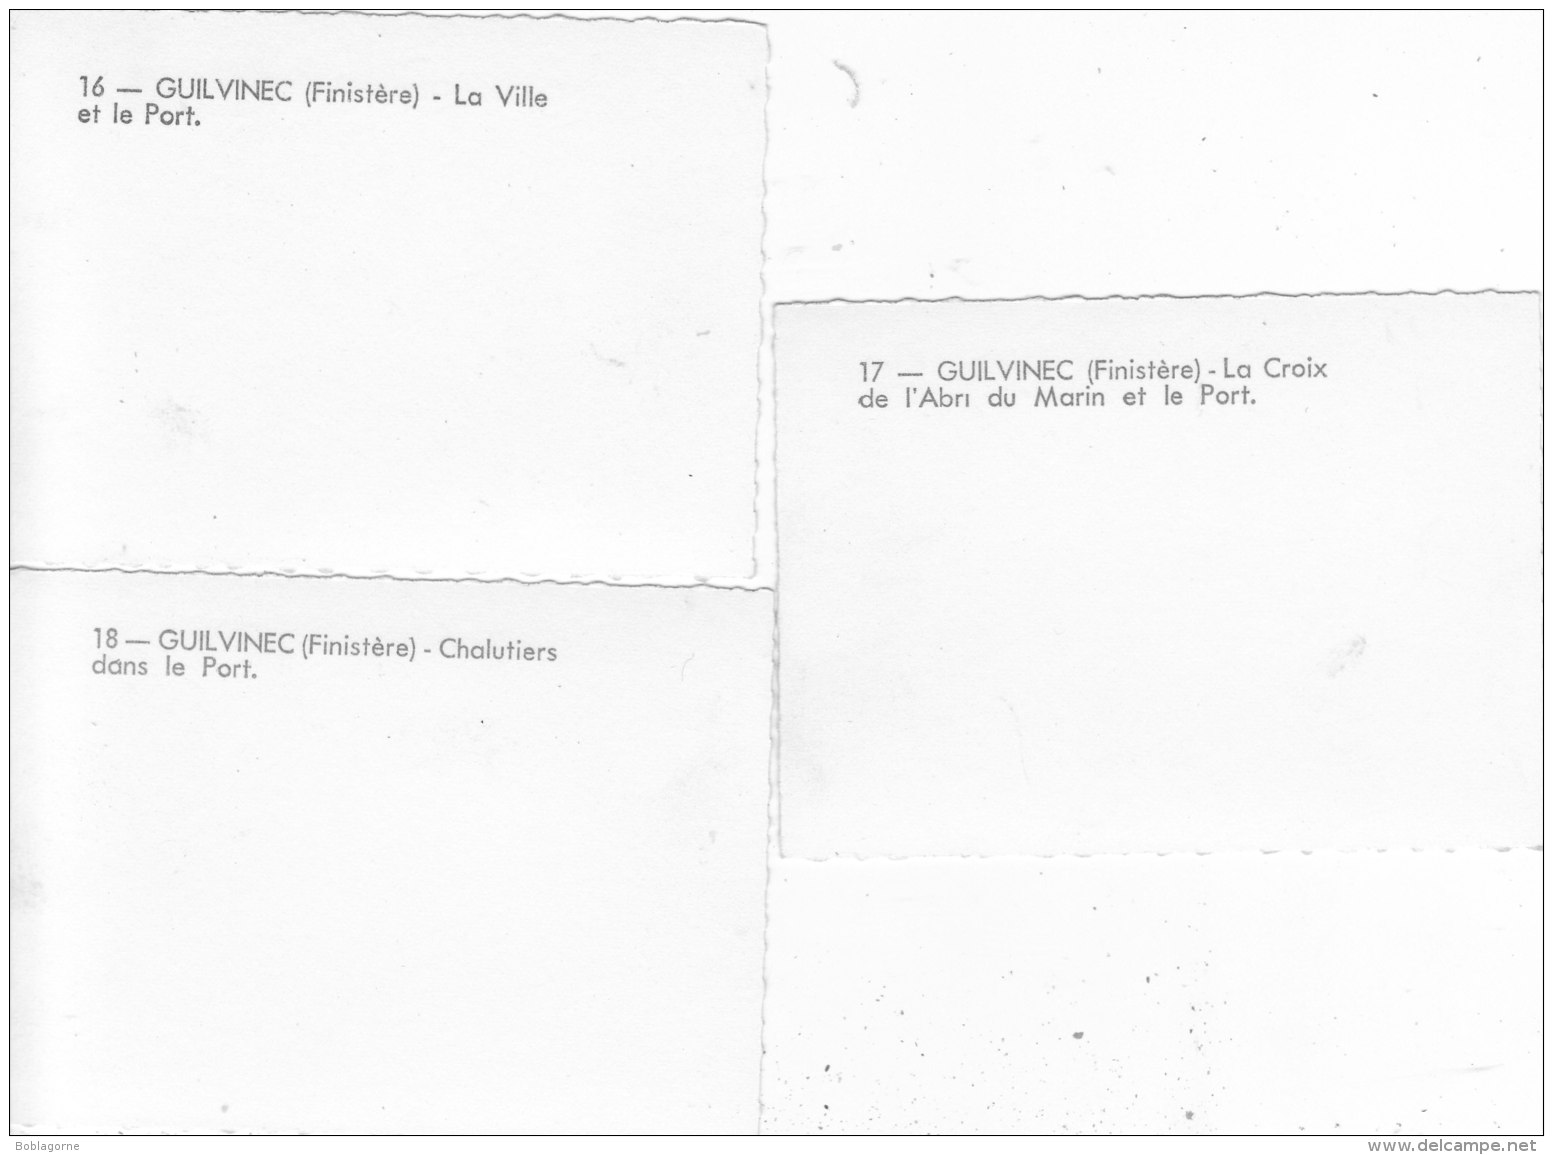 le guilvinec - finistère (pochette de 10 photos - les tirages modernes paris)